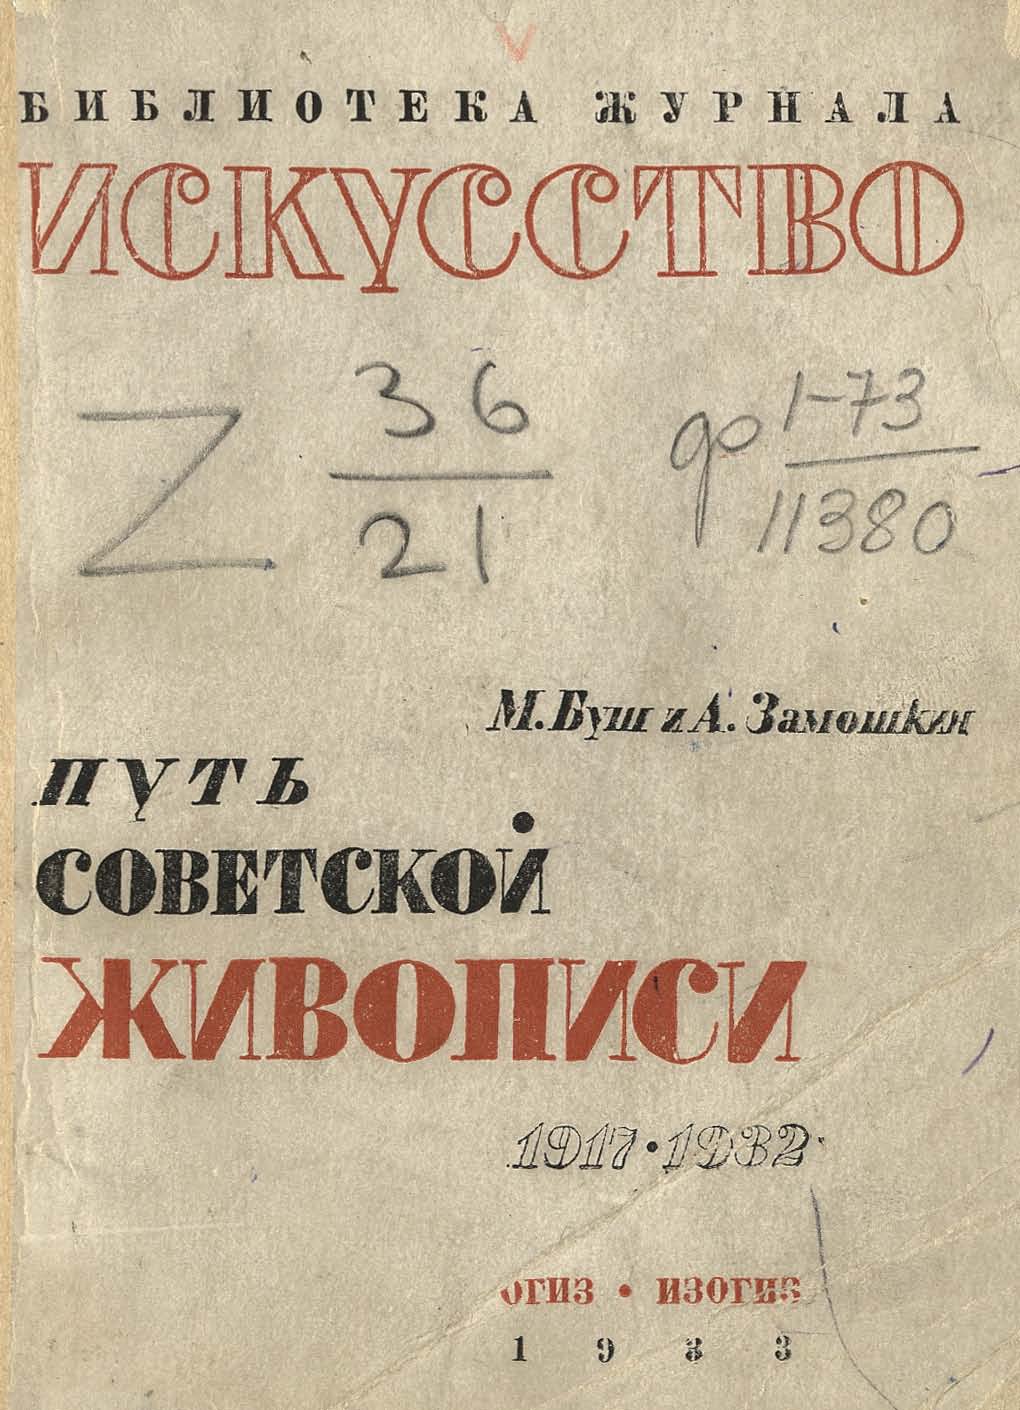 Путь советской живописи. 1917—1932 / М. Буш, А. Замошкин. — [Москва] : ОГИЗ—ИЗОГИЗ, 1933